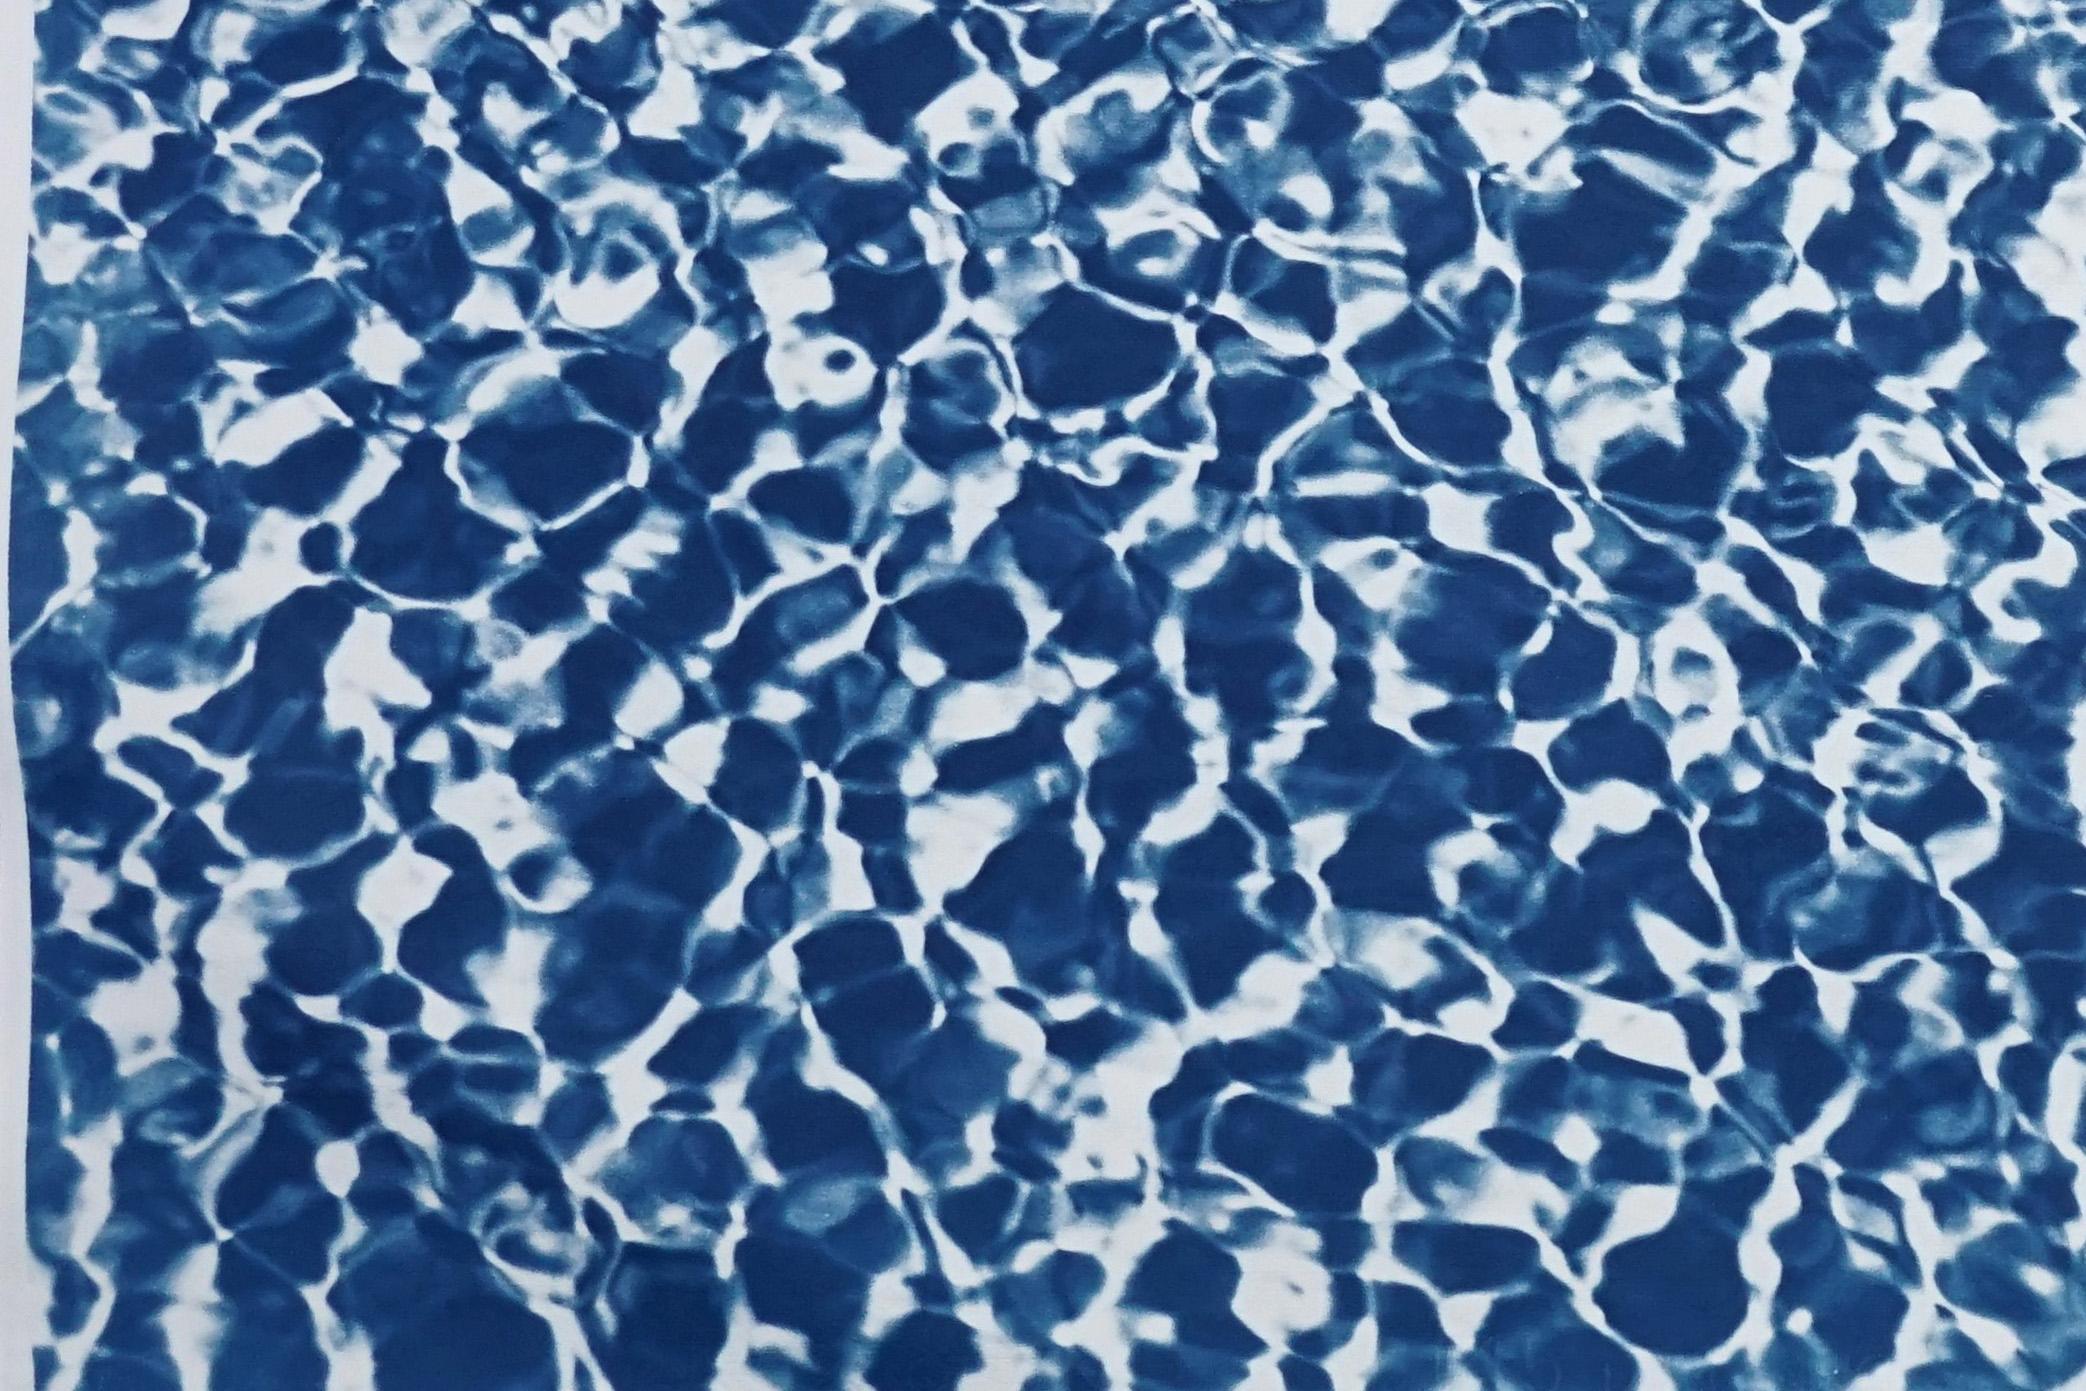 Reflections d'eau de piscine infinies, motif bleu et blanc, imprimé cyanotype fait à la main - Bleu Abstract Print par Kind of Cyan